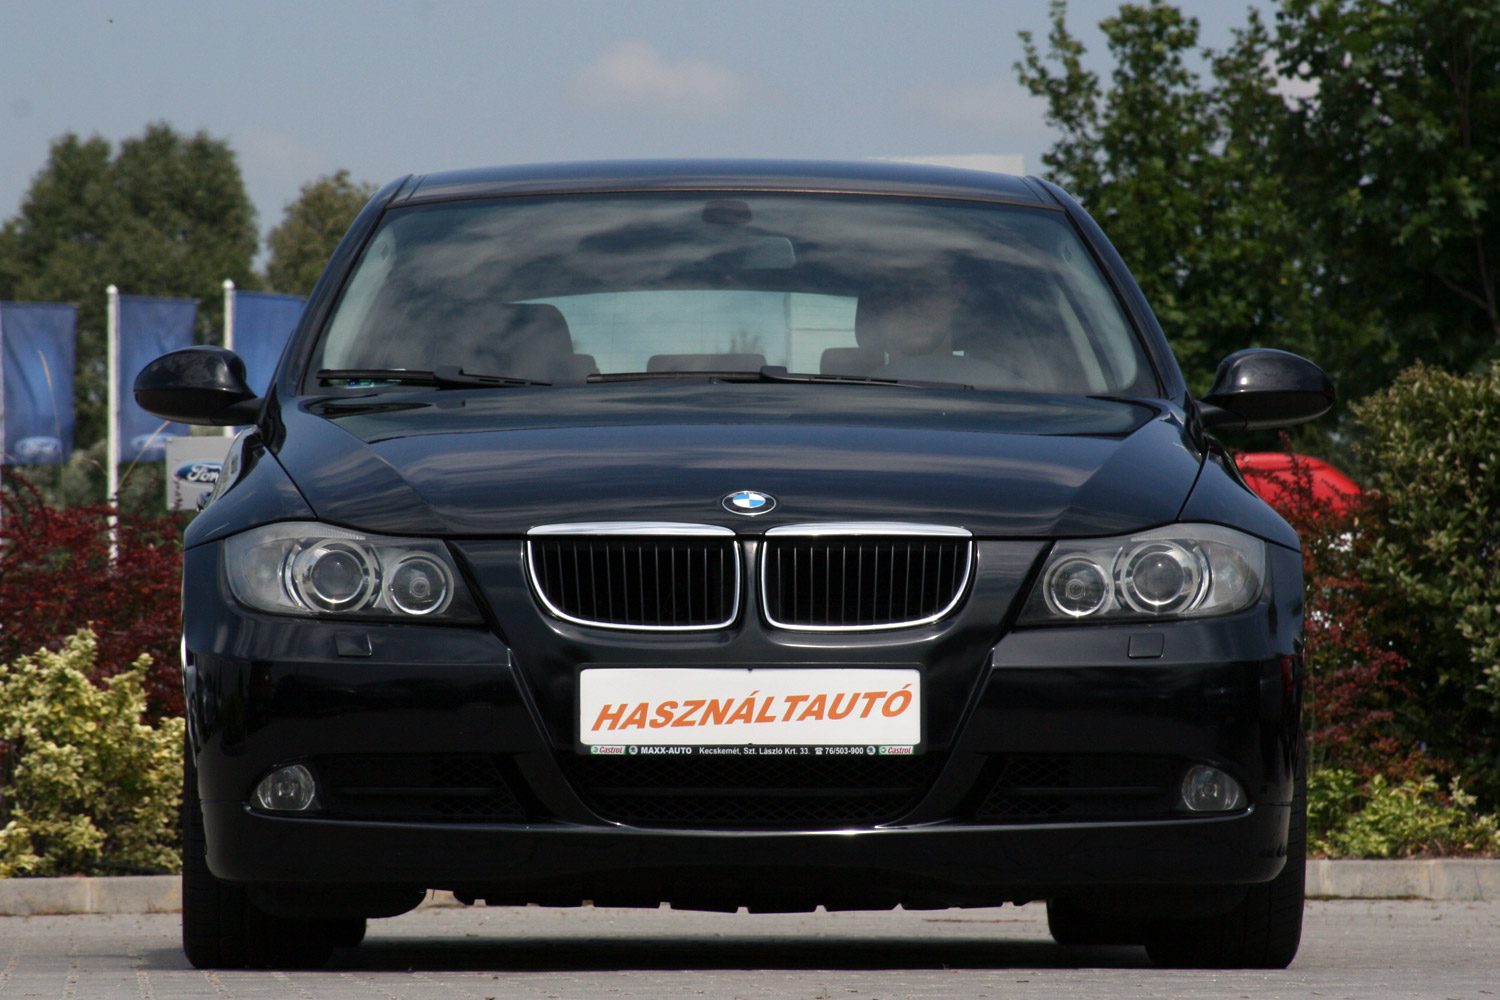 Használt autó: a magyarok kedvenc BMW-je 1